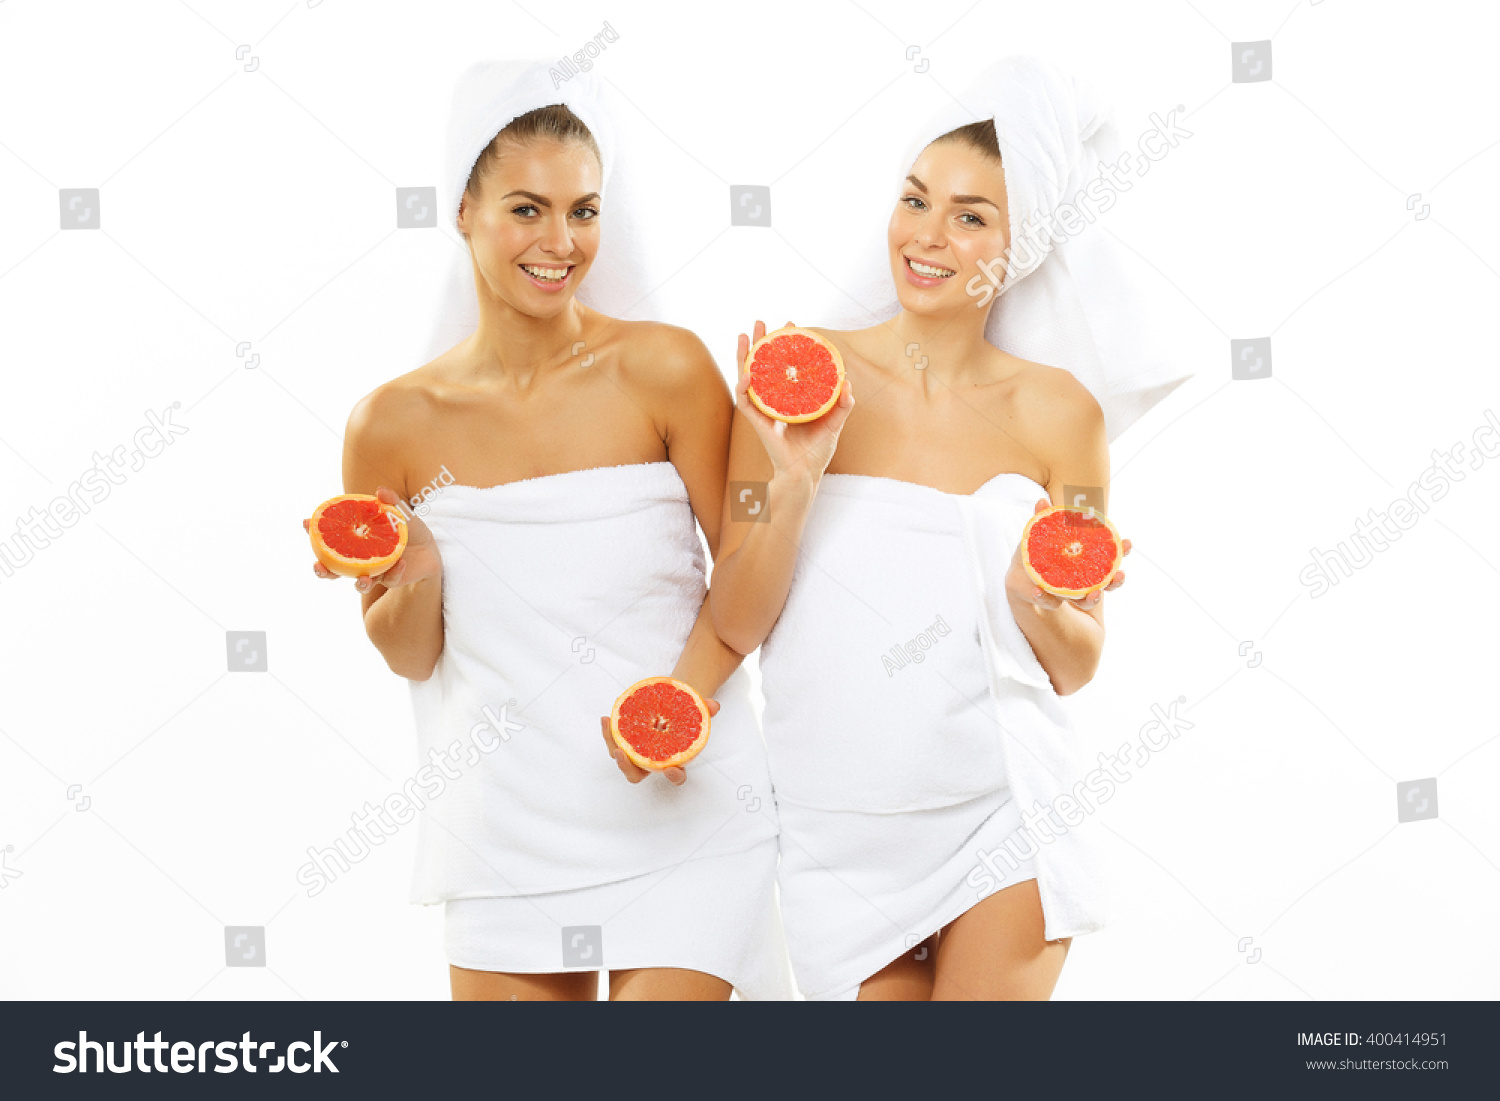 Girls in shower 2